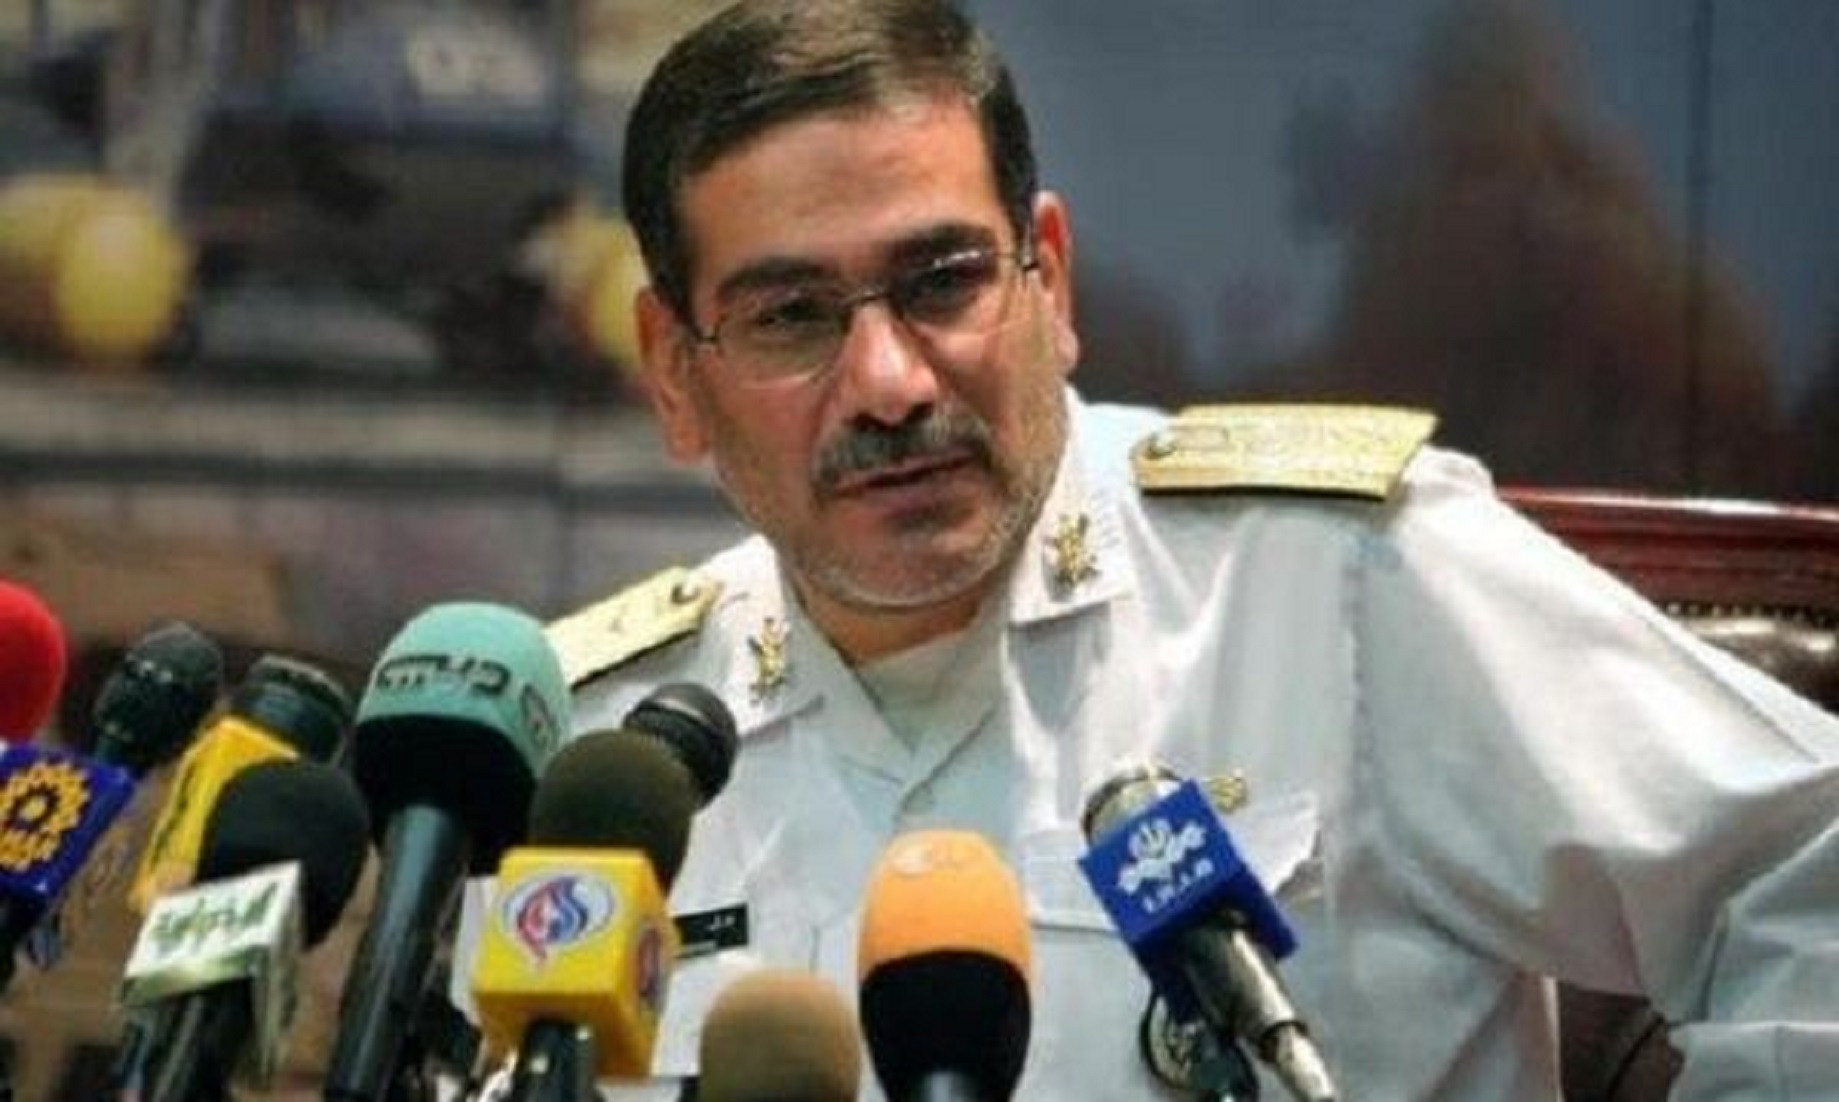 Iran Says U.S. Seeking “New Crisis” In Region, After Daesh Fall